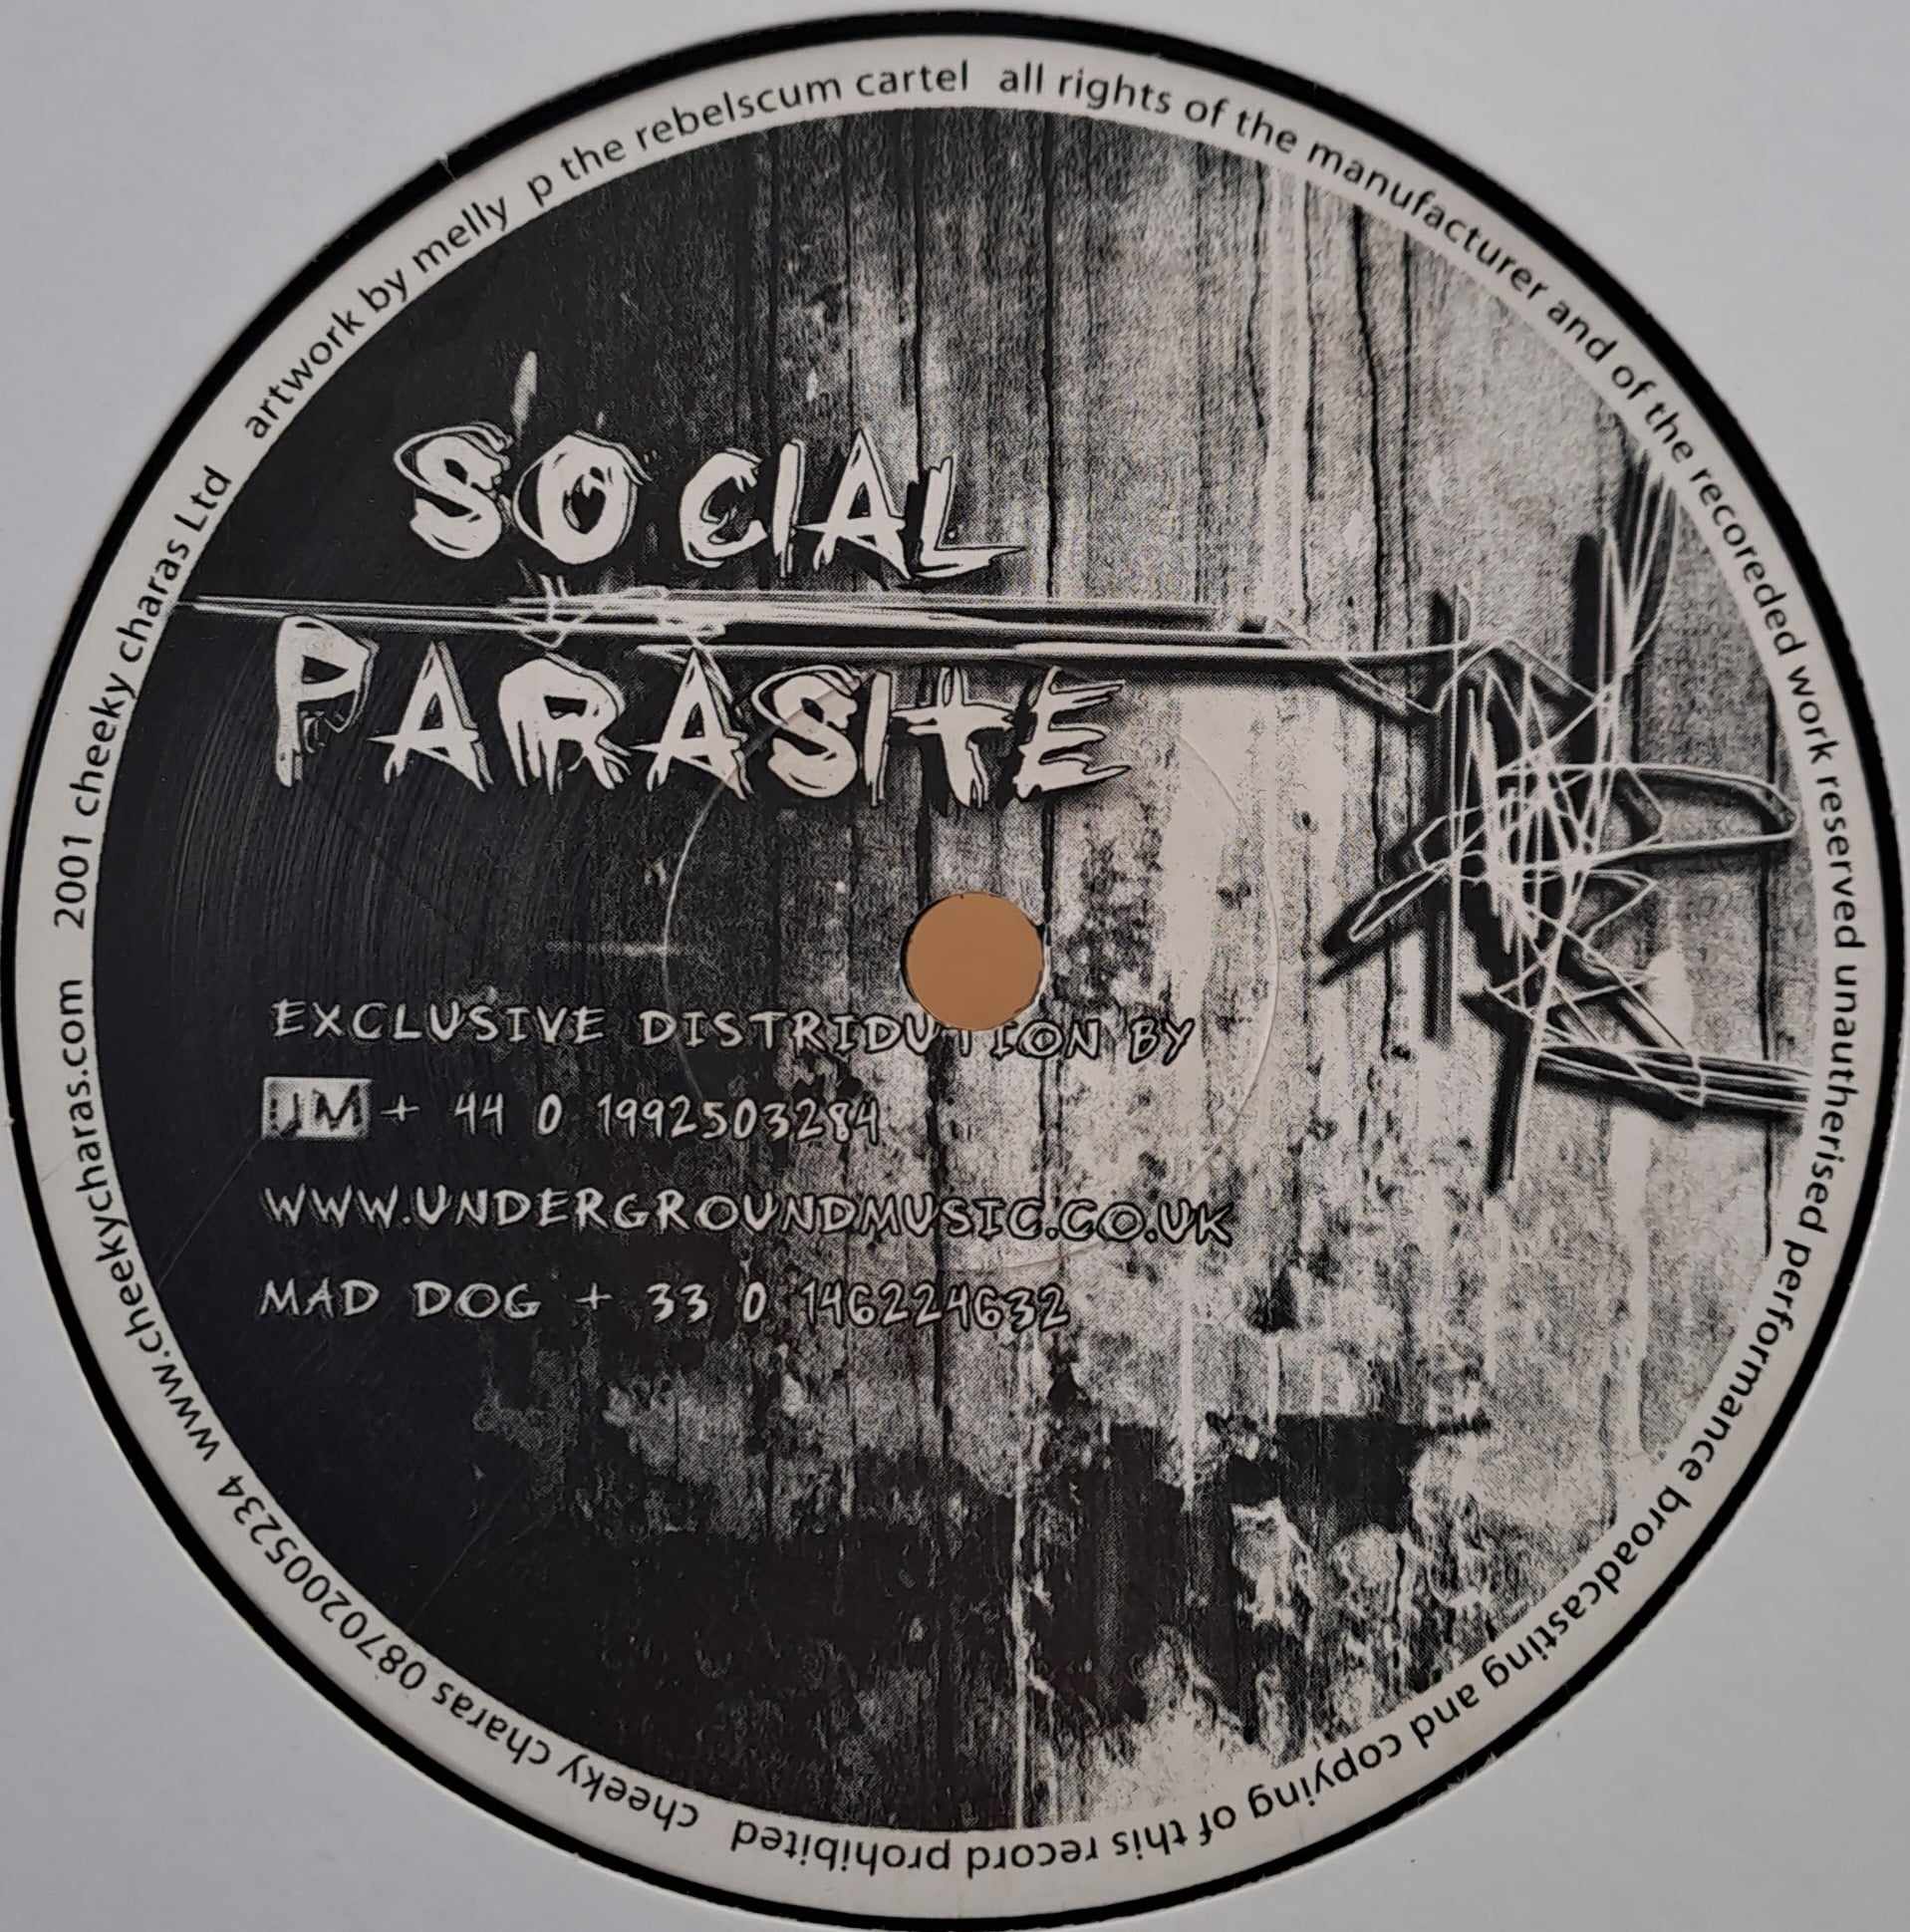 Social Parasite 06 - vinyle hardcore